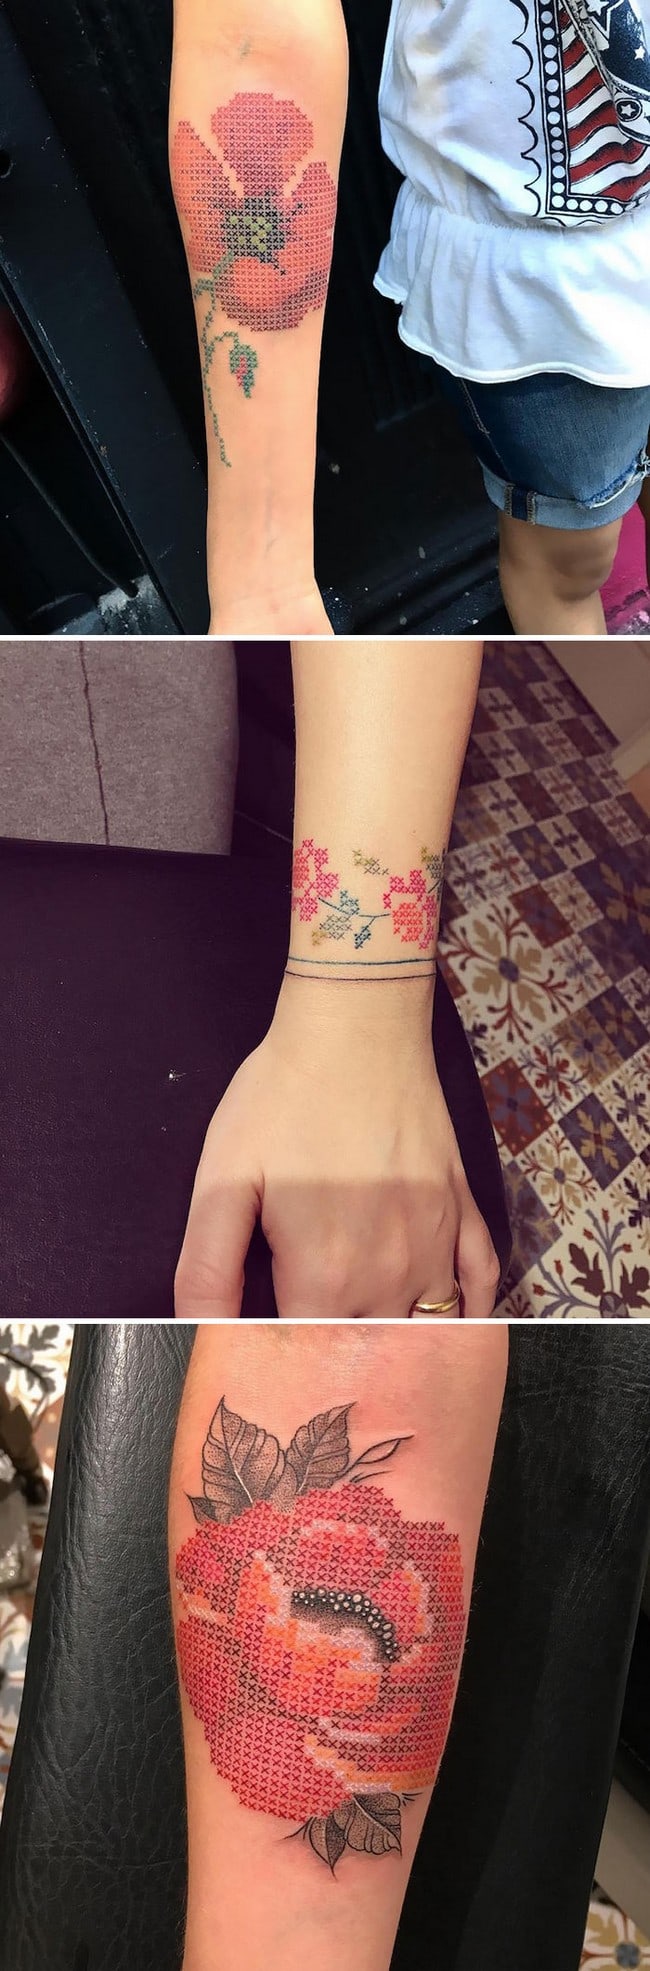 arte del tatuaje de flores eva krbdk